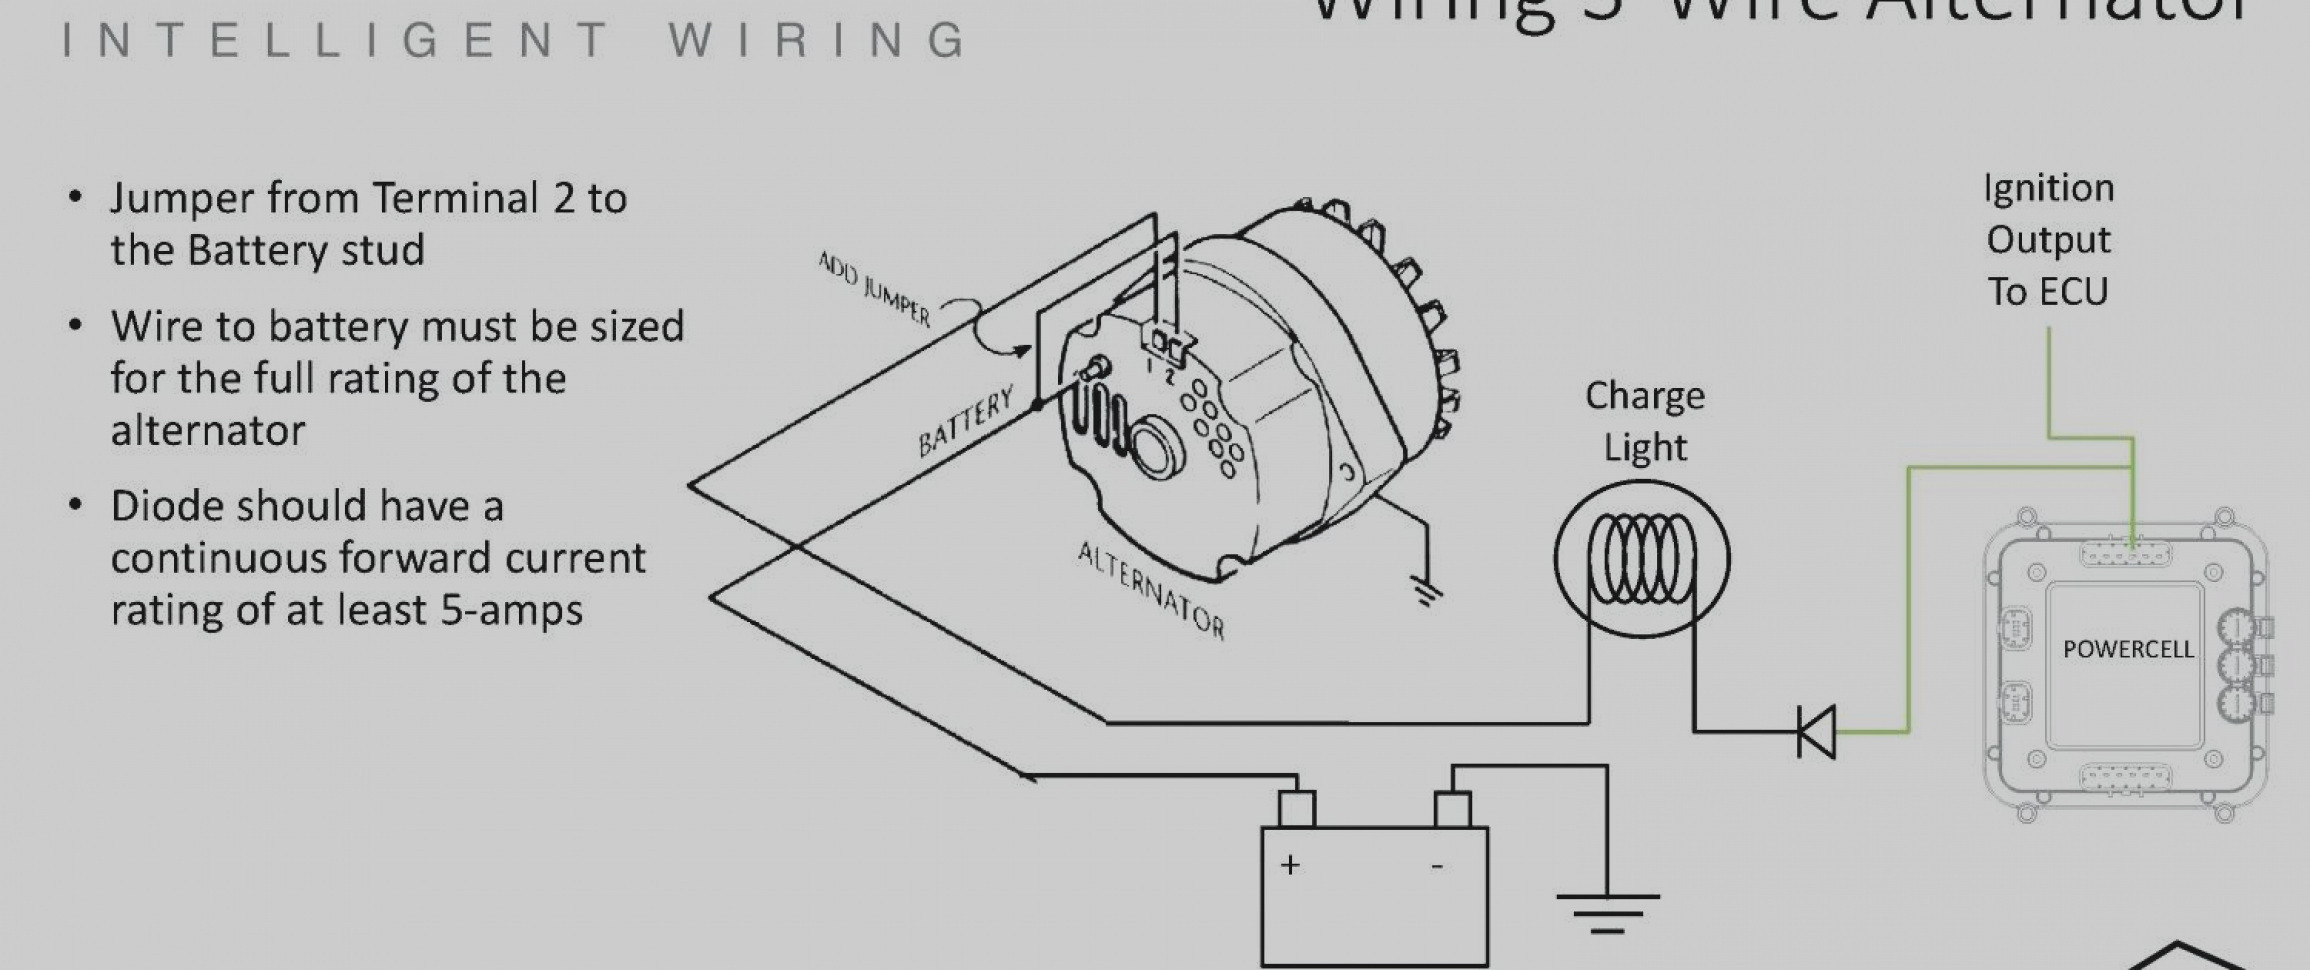 4 Wire Alternator Wiring Diagram 4 Wire Alternator Wiring Diagram Inspirational 3 Wire Alternator